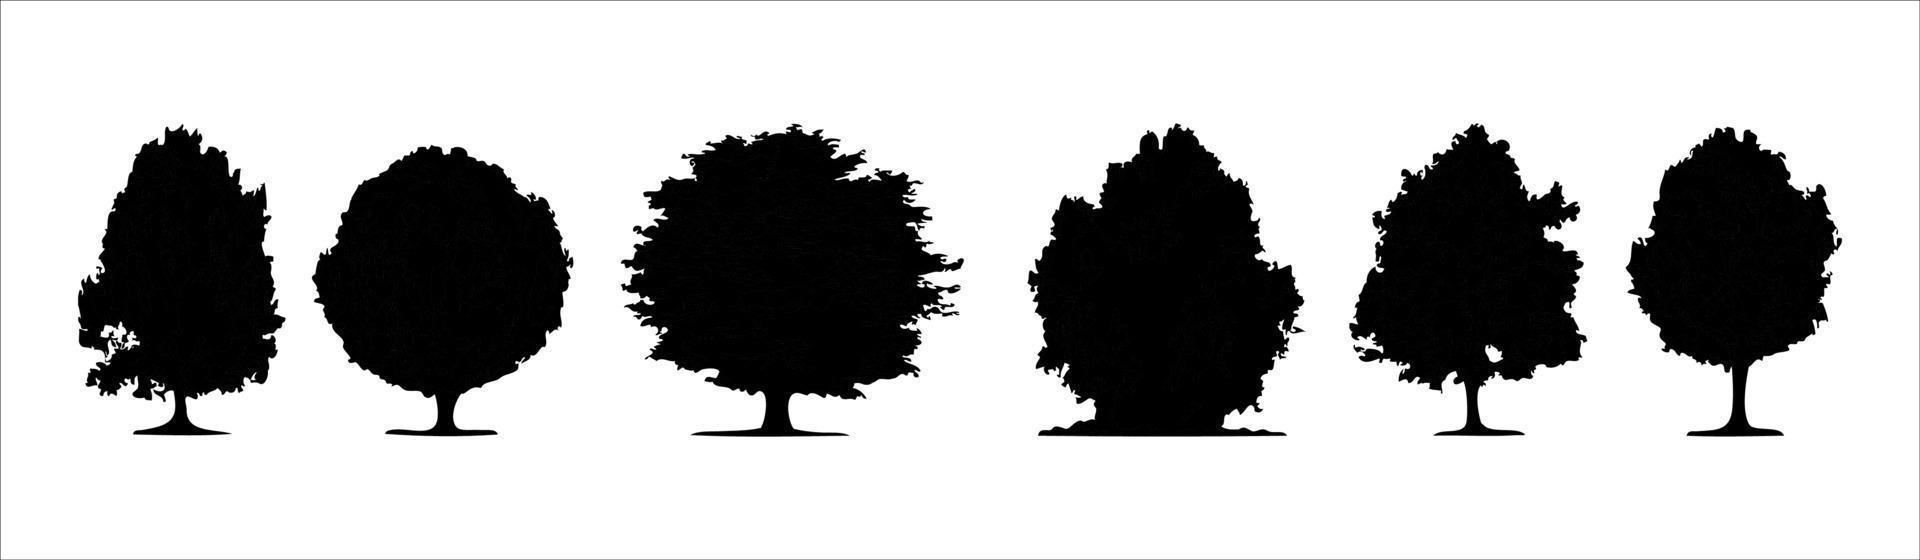 silhouettes d'arbres de vecteur